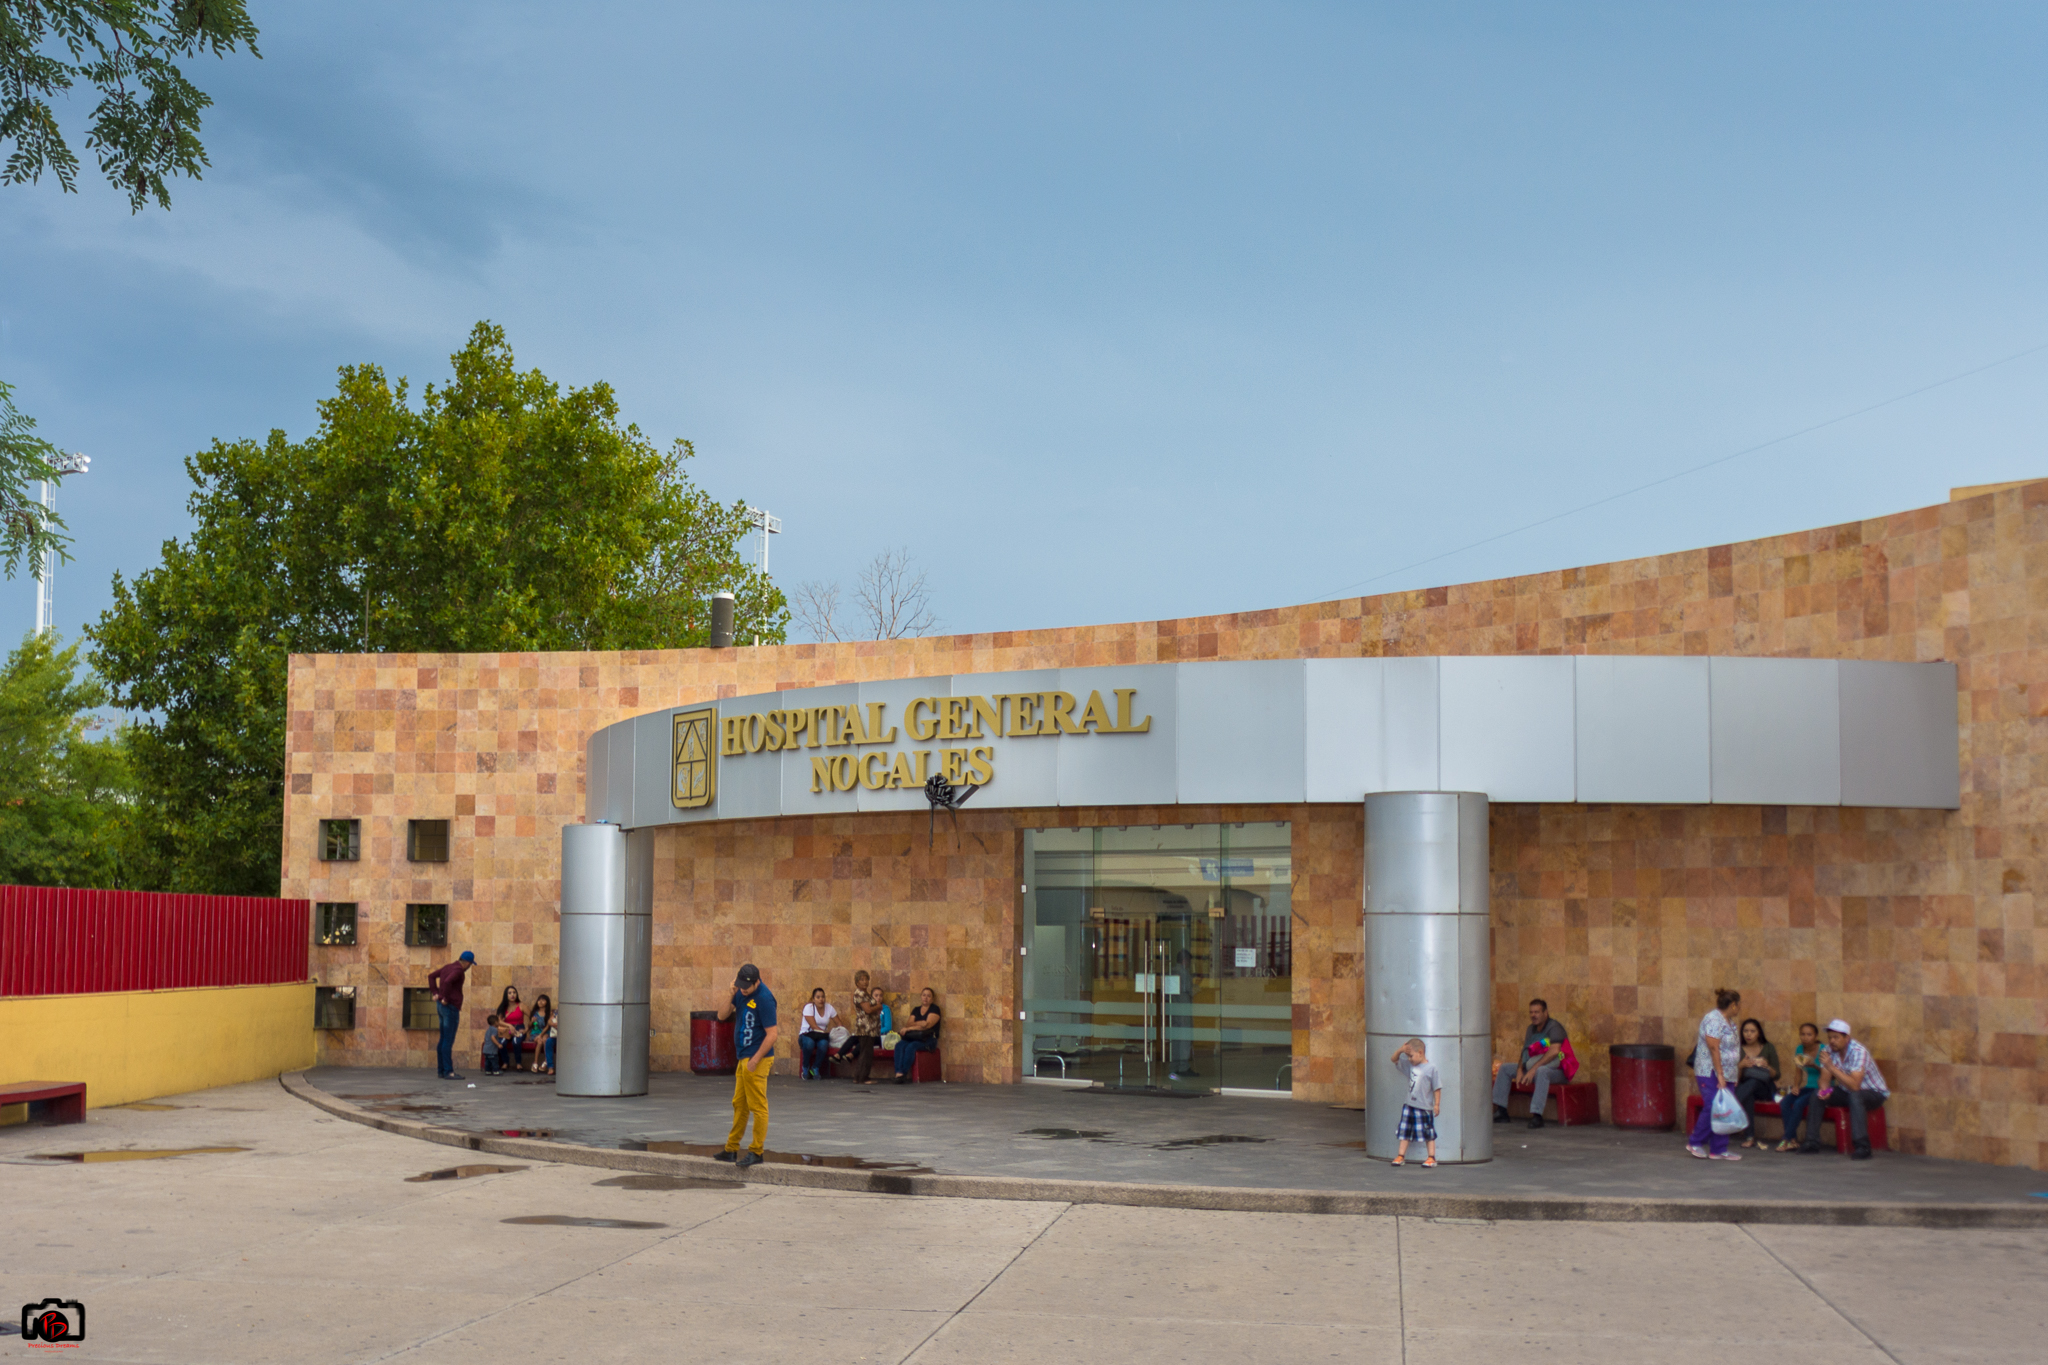 Hospital General De Nogales